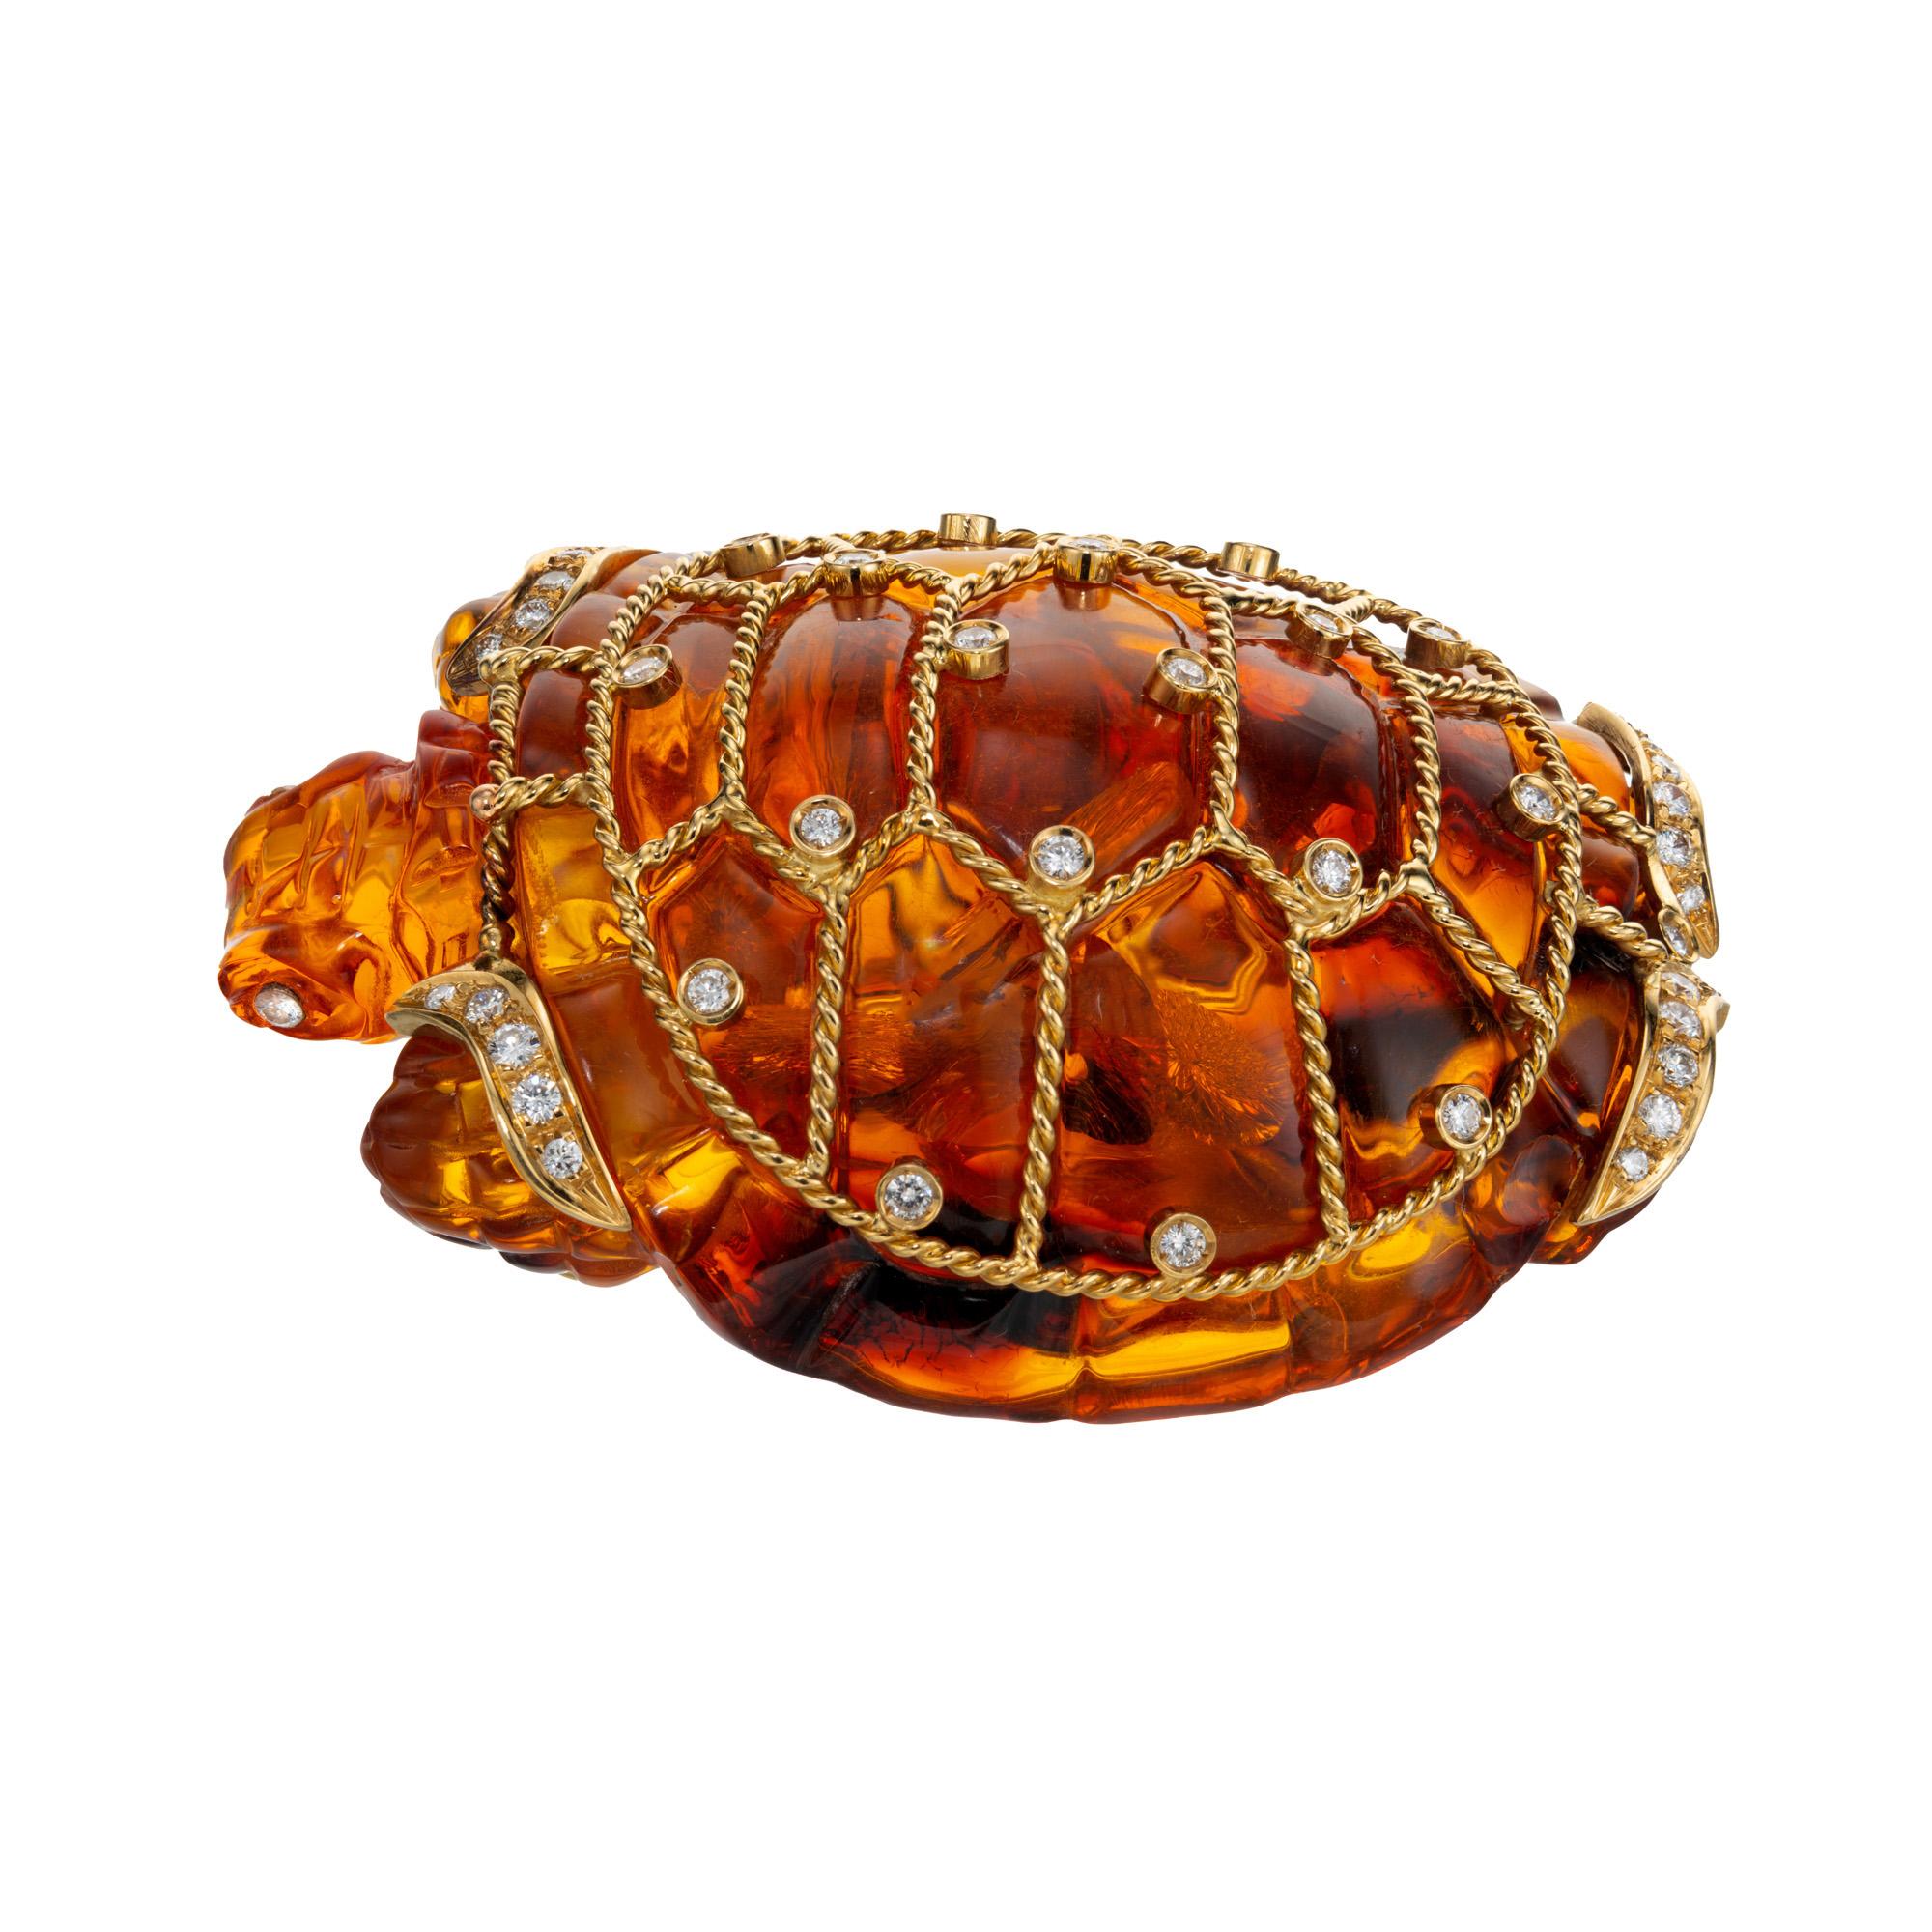 Einzigartige, reich gefärbte, große, geschnitzte Bernstein-Schildkröten-Brosche. Diese Schildkröte aus geschnitztem Bernstein ist mit einer gedrehten Drahtfassung aus 18 Karat Gelbgold verziert, die mit 43 Diamanten im Brillantschliff in der Lünette